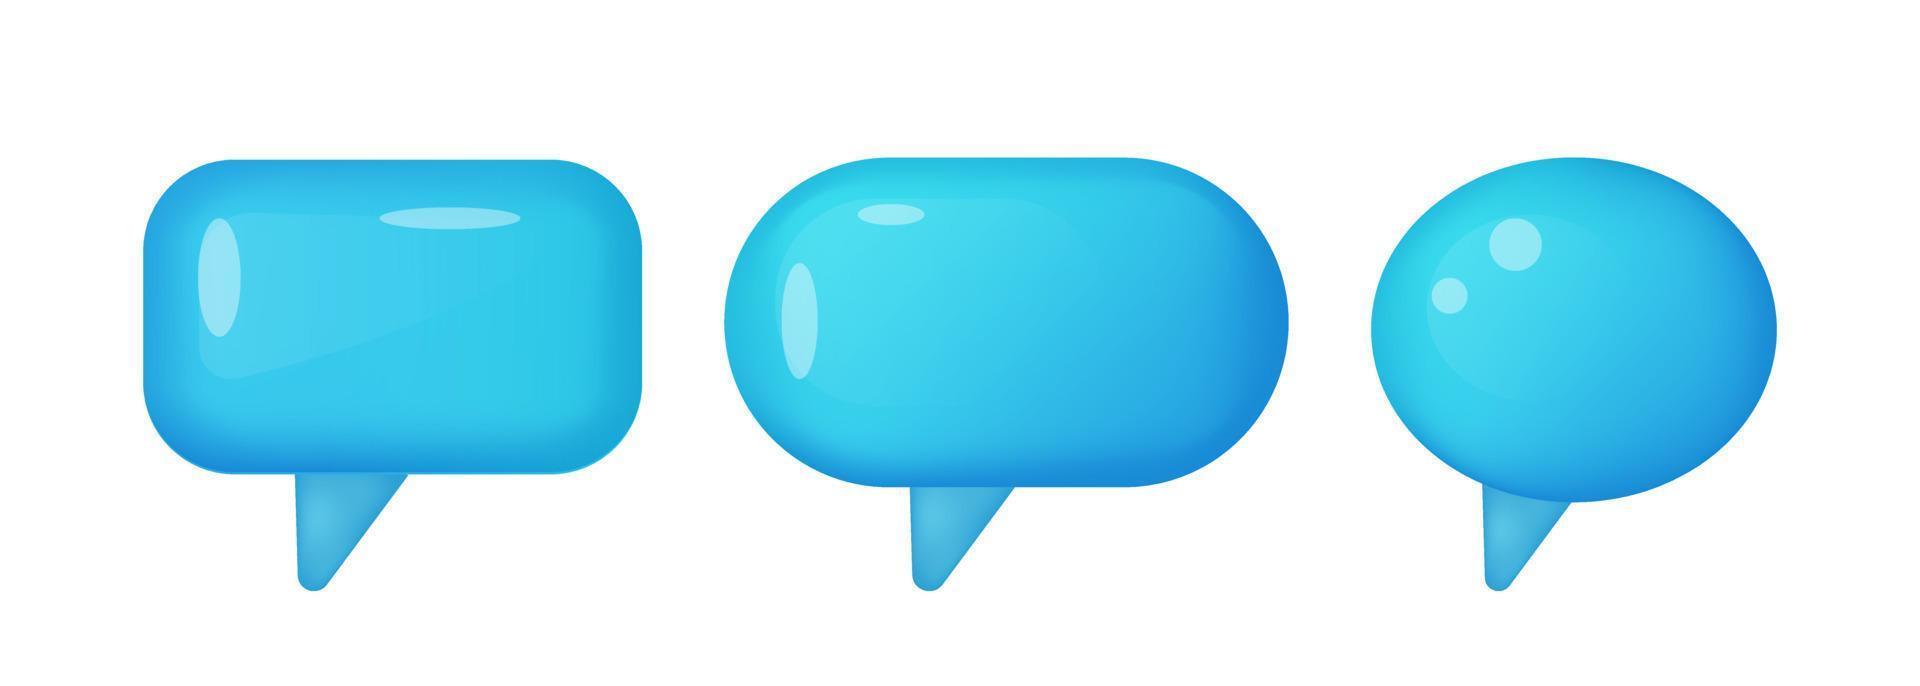 3d azul discurso bolha, social meios de comunicação bate-papo mensagem ícone. vetor